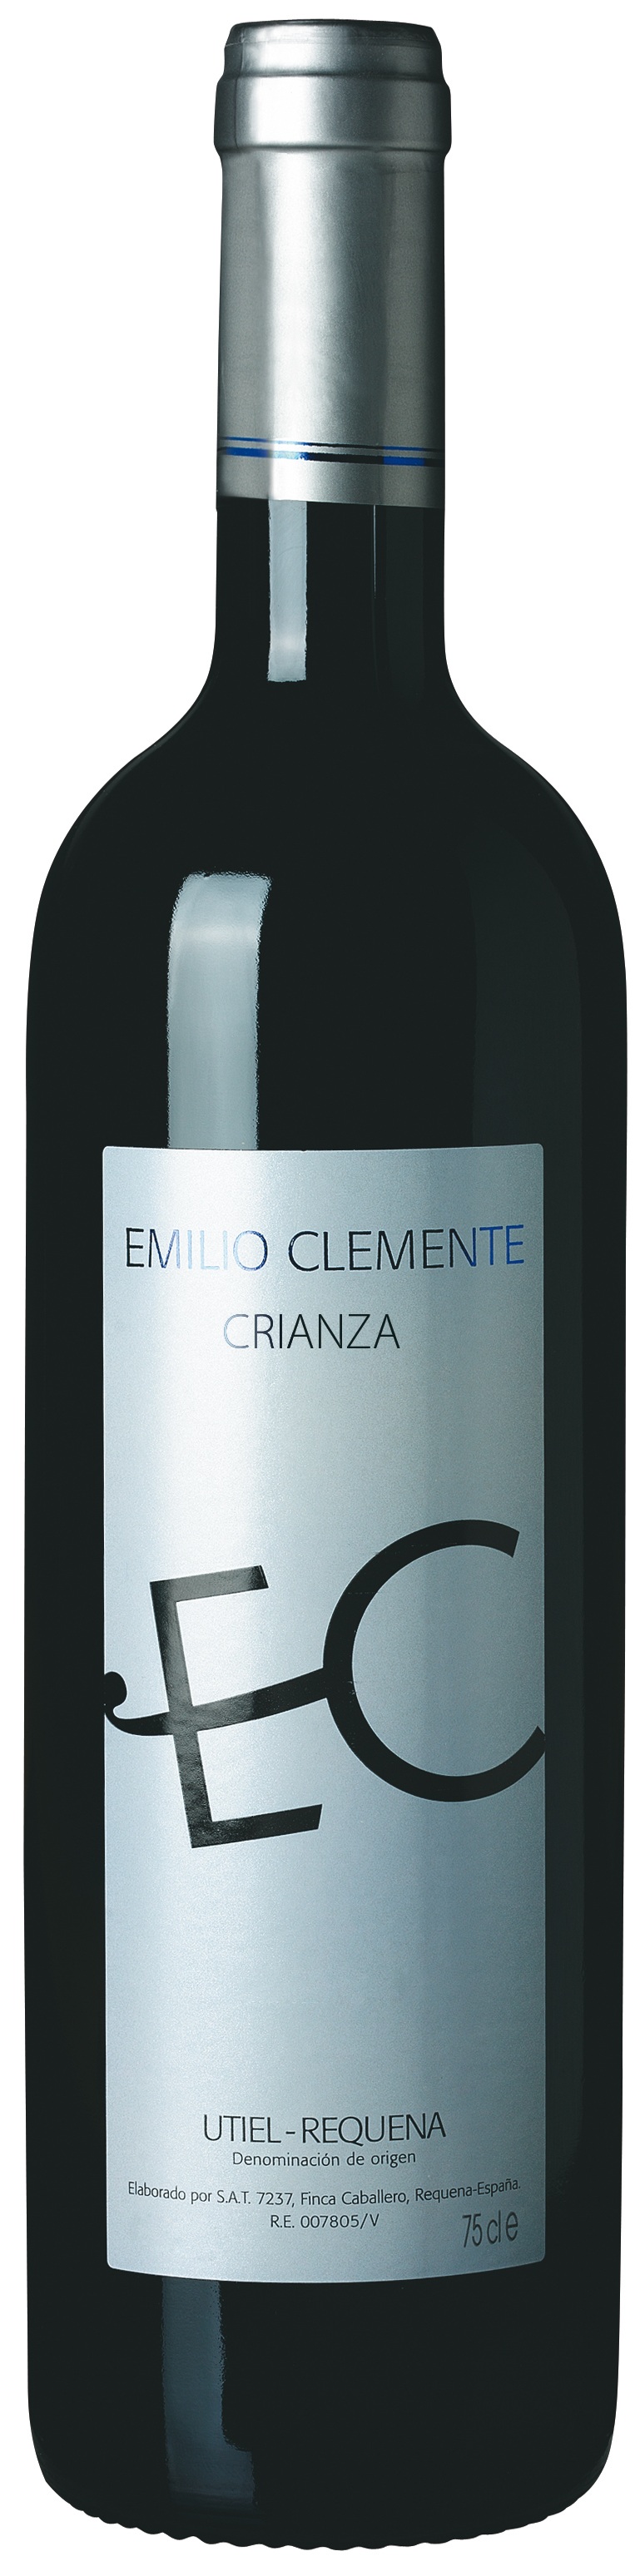 Imagen de la botella de Vino Emilio Clemente Crianza